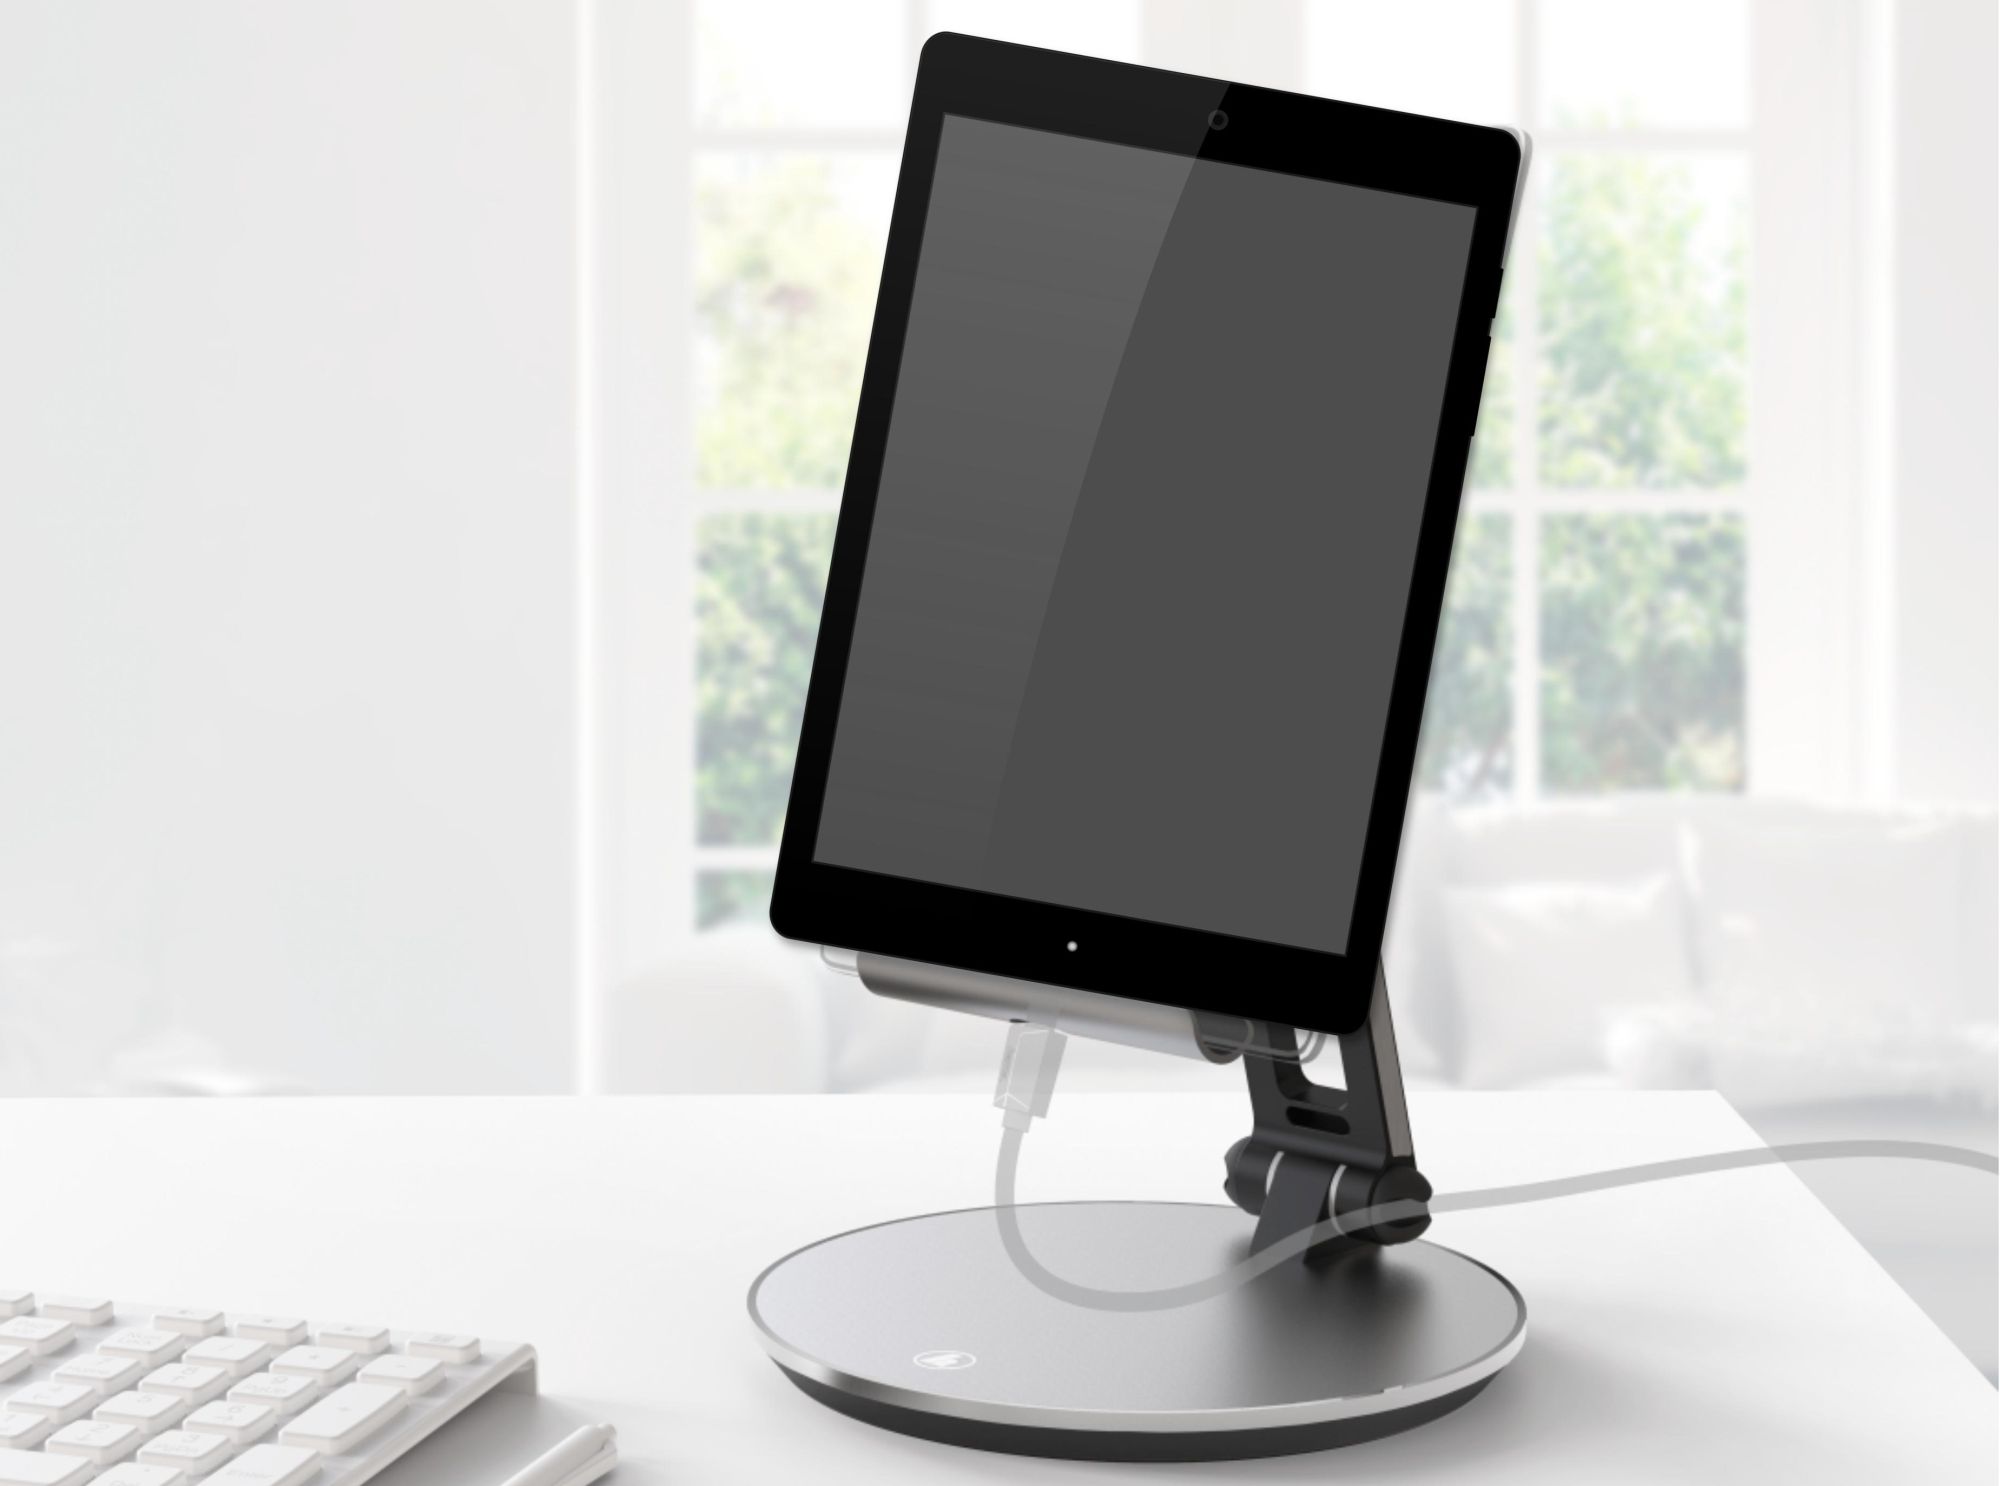 Aluminiowy stojak na tablet od marki Hama zadba o komfort pracy i zabawy